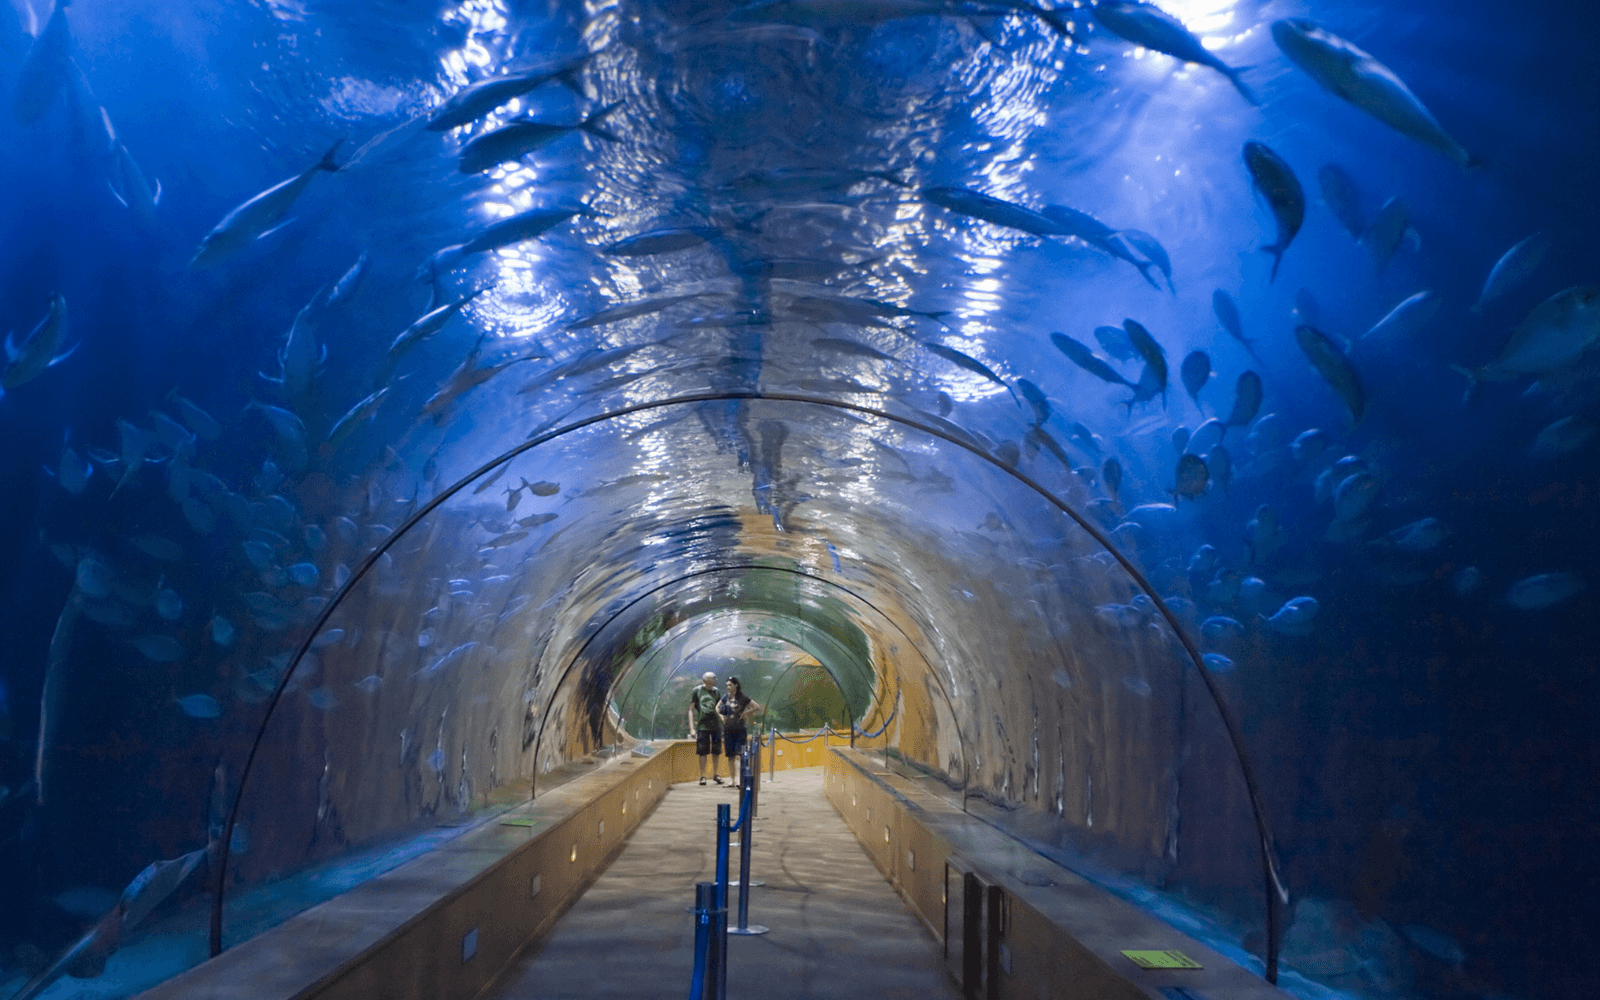 Valencia Aquarium, the largest in Europe